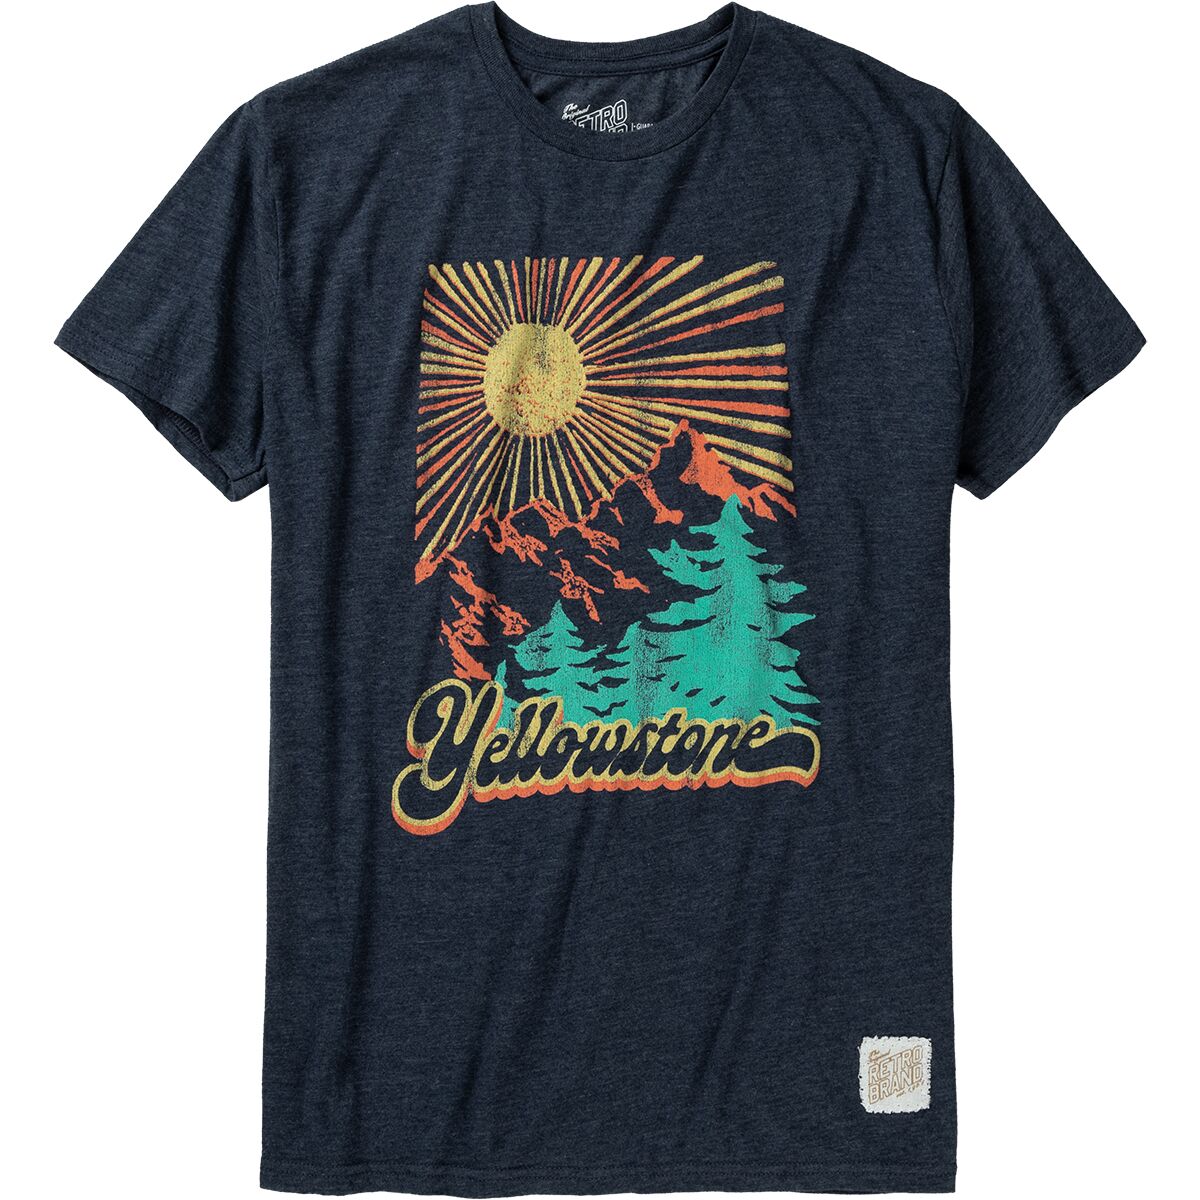 Original Retro Brand Yellowstone T-Shirt